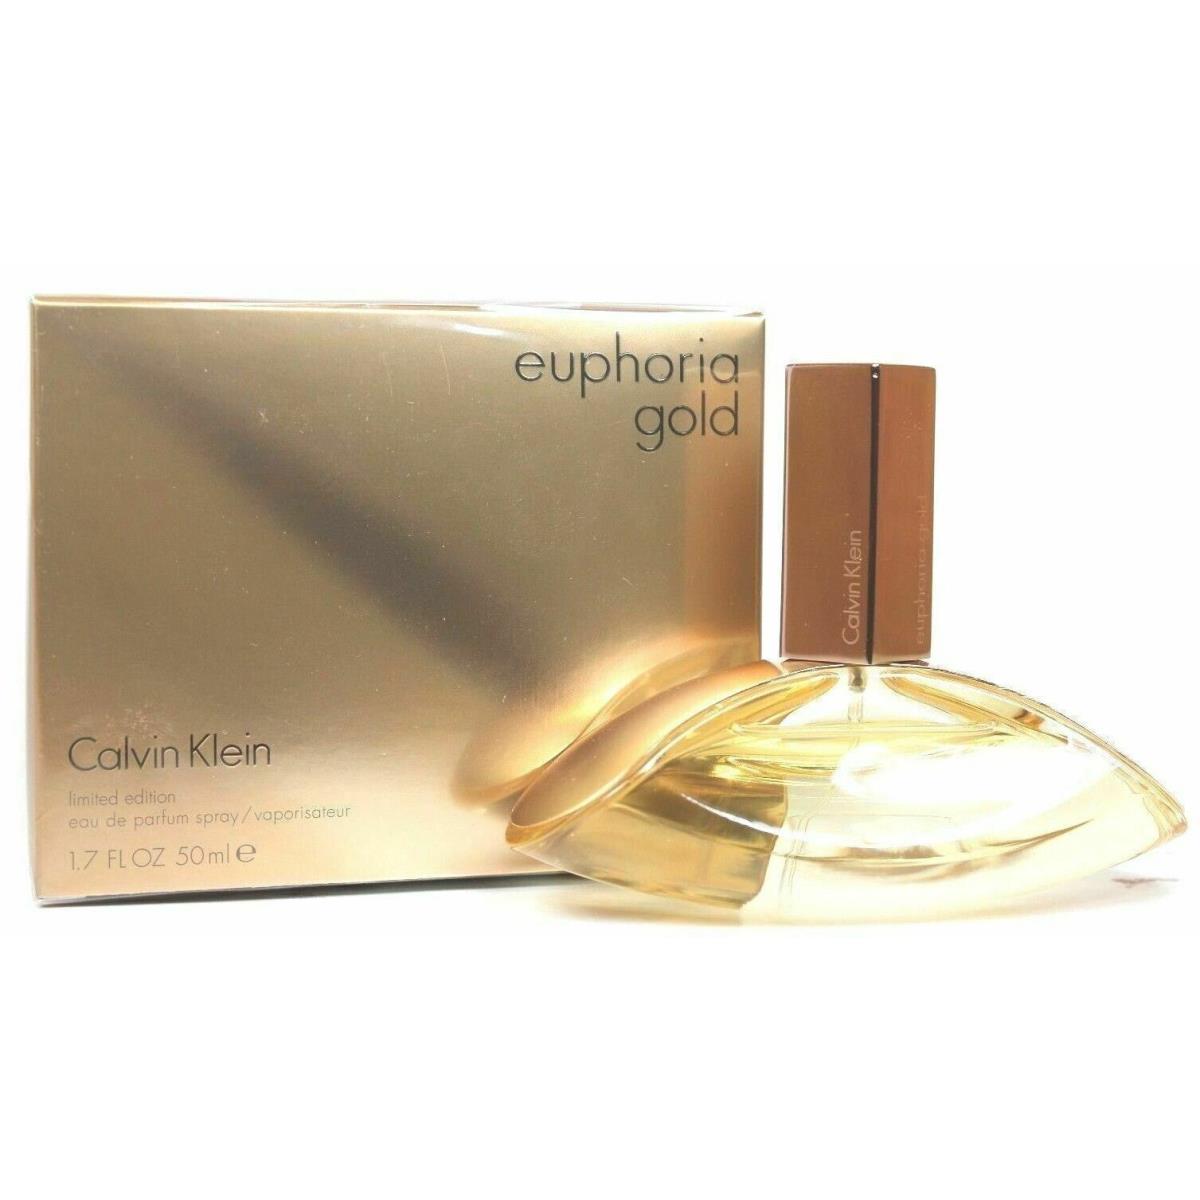 Calvin Klein Euphoria Gold 1.7 / 50 ml Eau De Parfum Perfume Spray